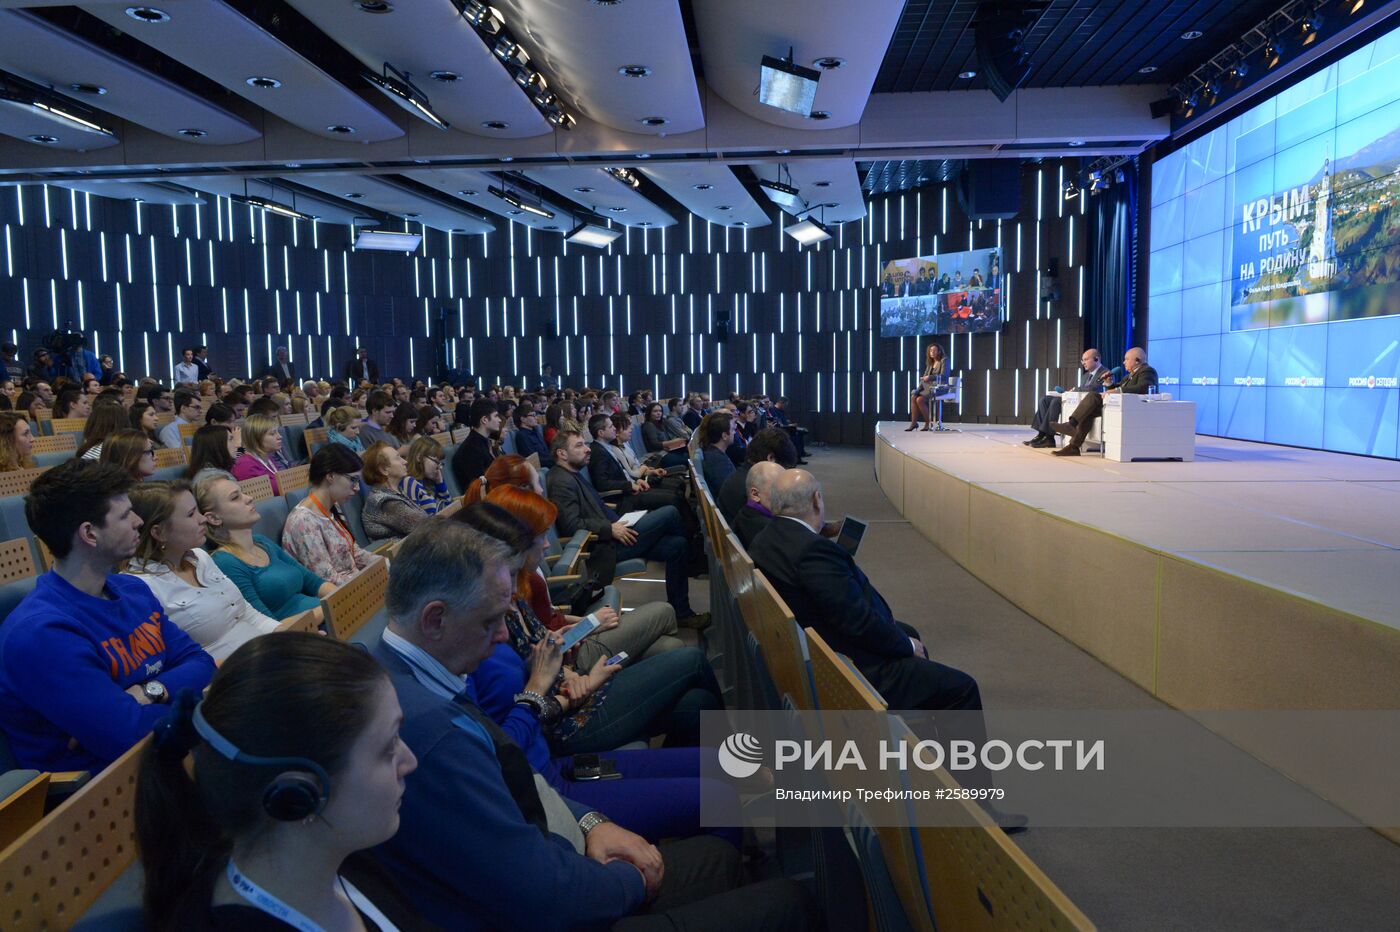 Пресс-конференция, посвященная специальному показу фильма "Крым. Путь на Родину"